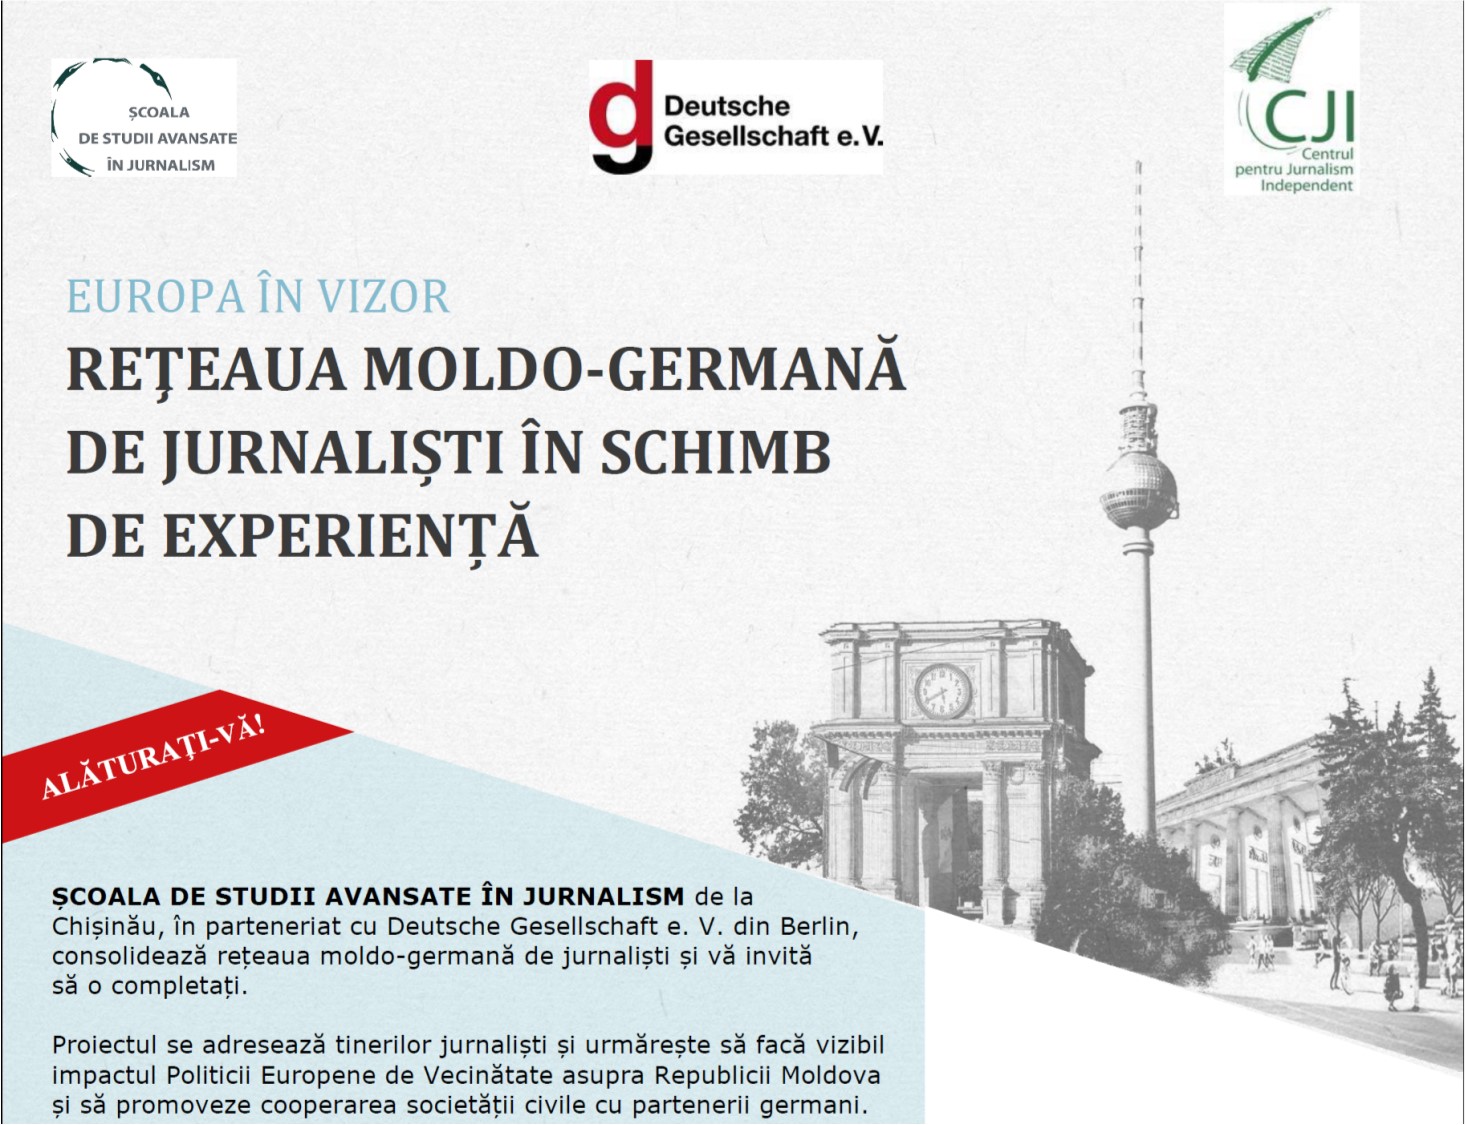 Europa în vizor: Reţeaua moldo-germană de jurnaliști în schimb de experiență 